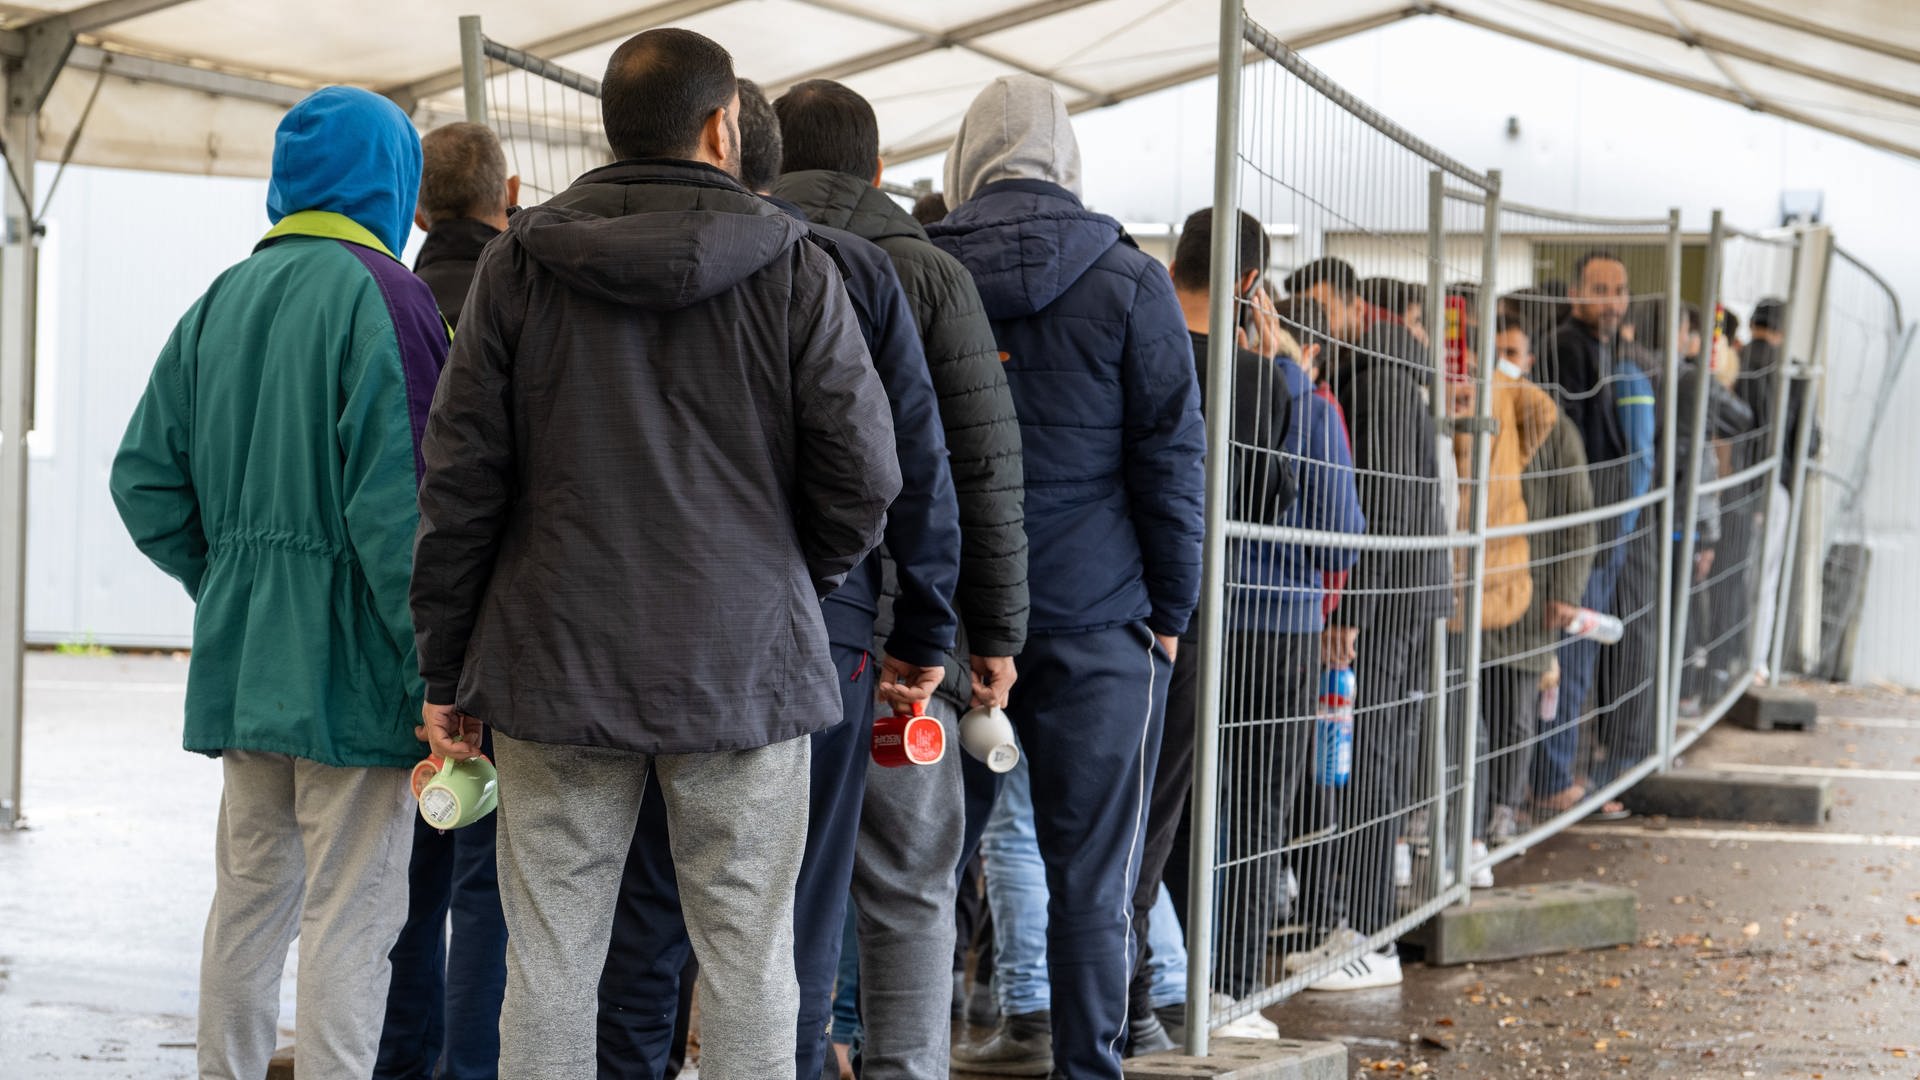 CDU-Fraktion will strengere Migrationspolitik und bekommt viel Zustimmung